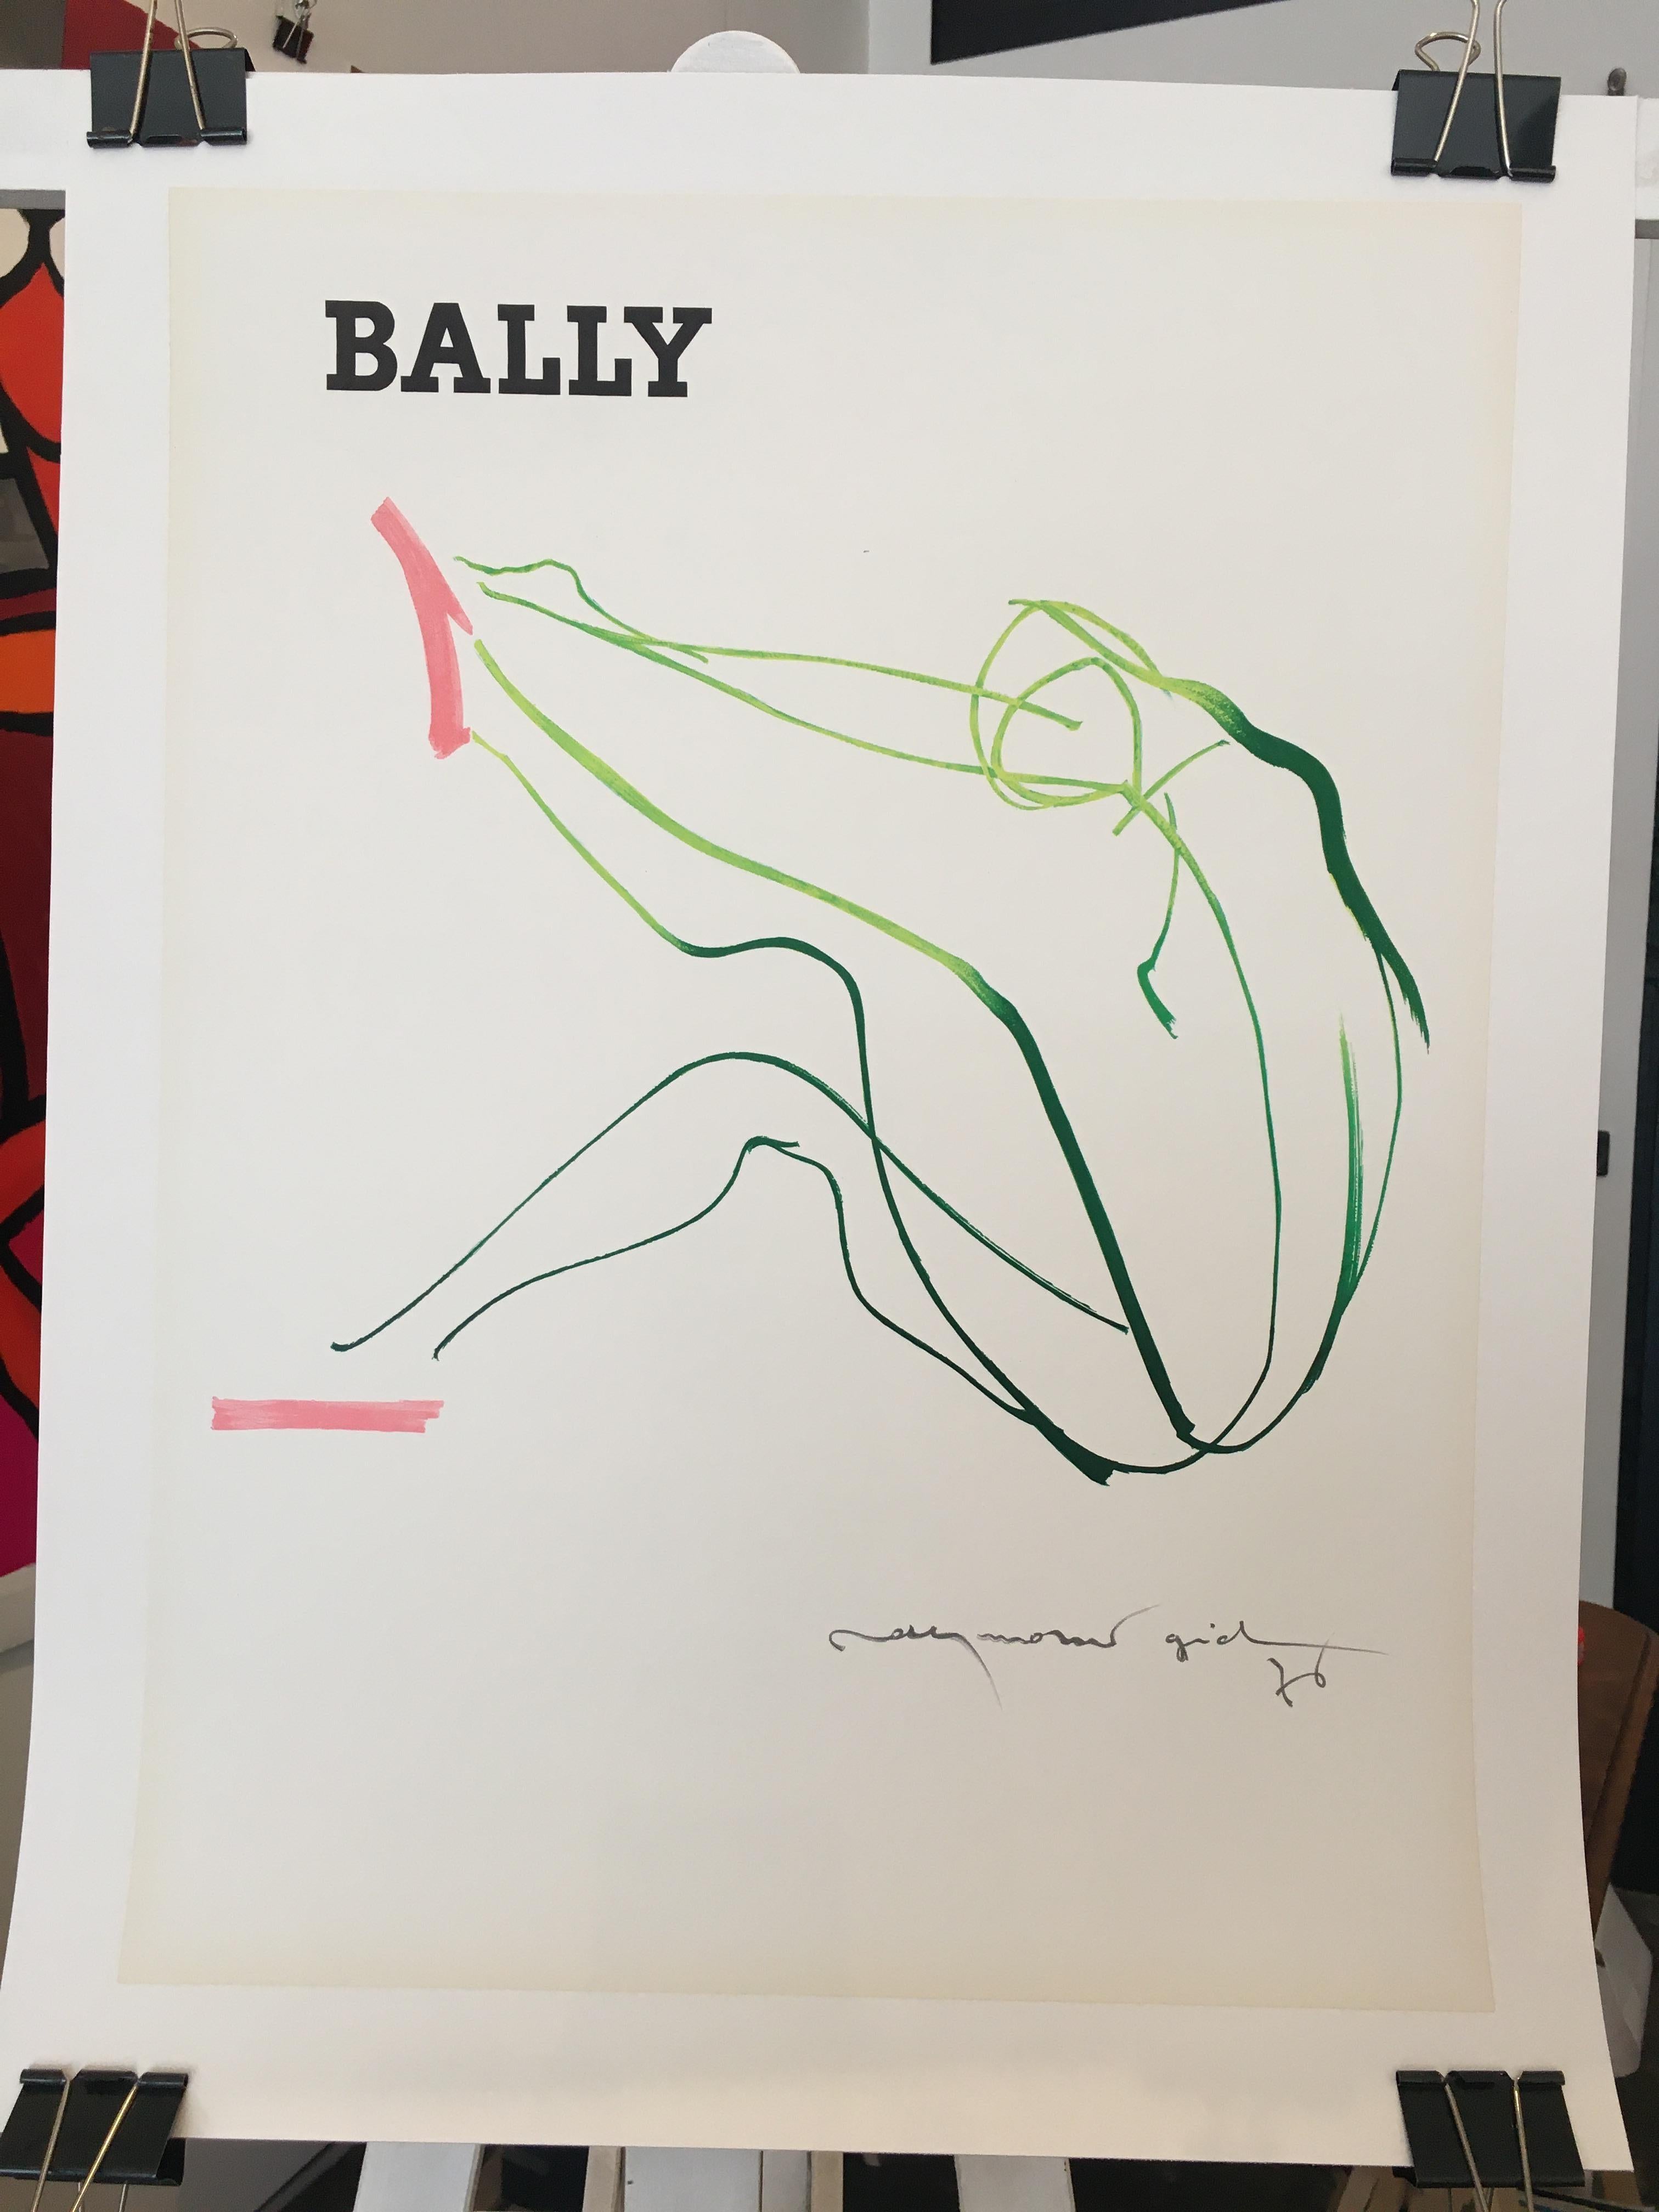 Bally Gid Femme, petit format - affiche originale vintage, 1976


Artiste :
Raymond Gid

Année :
1976

Dimensions :
40 x 60 cm

Condition : 
Bon

Format :
Dos en lin pour la conservation.